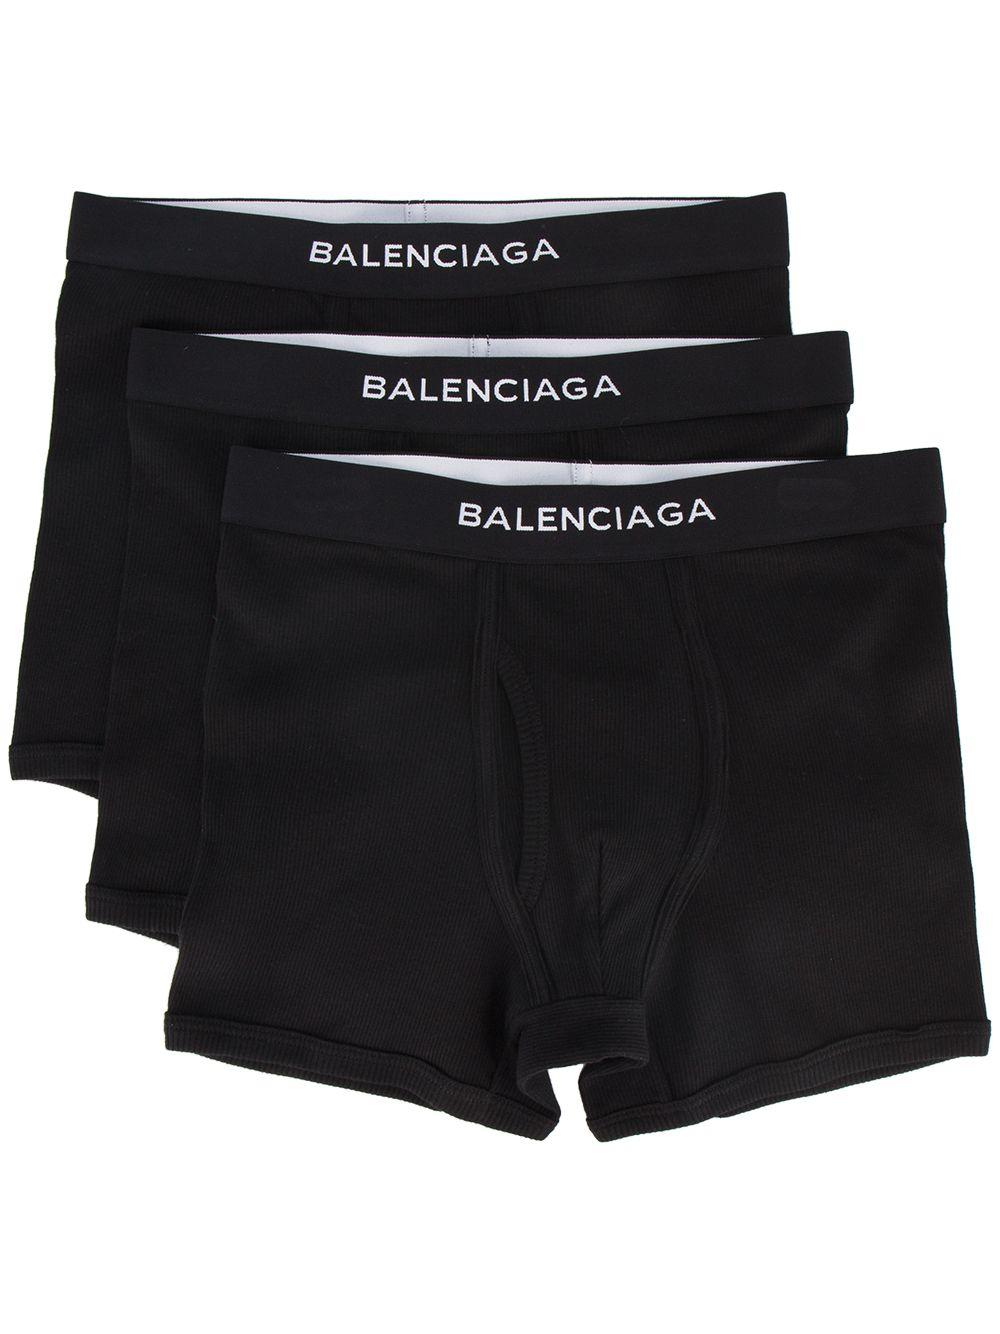 Balenciaga Black Boxer Briefs By for Men